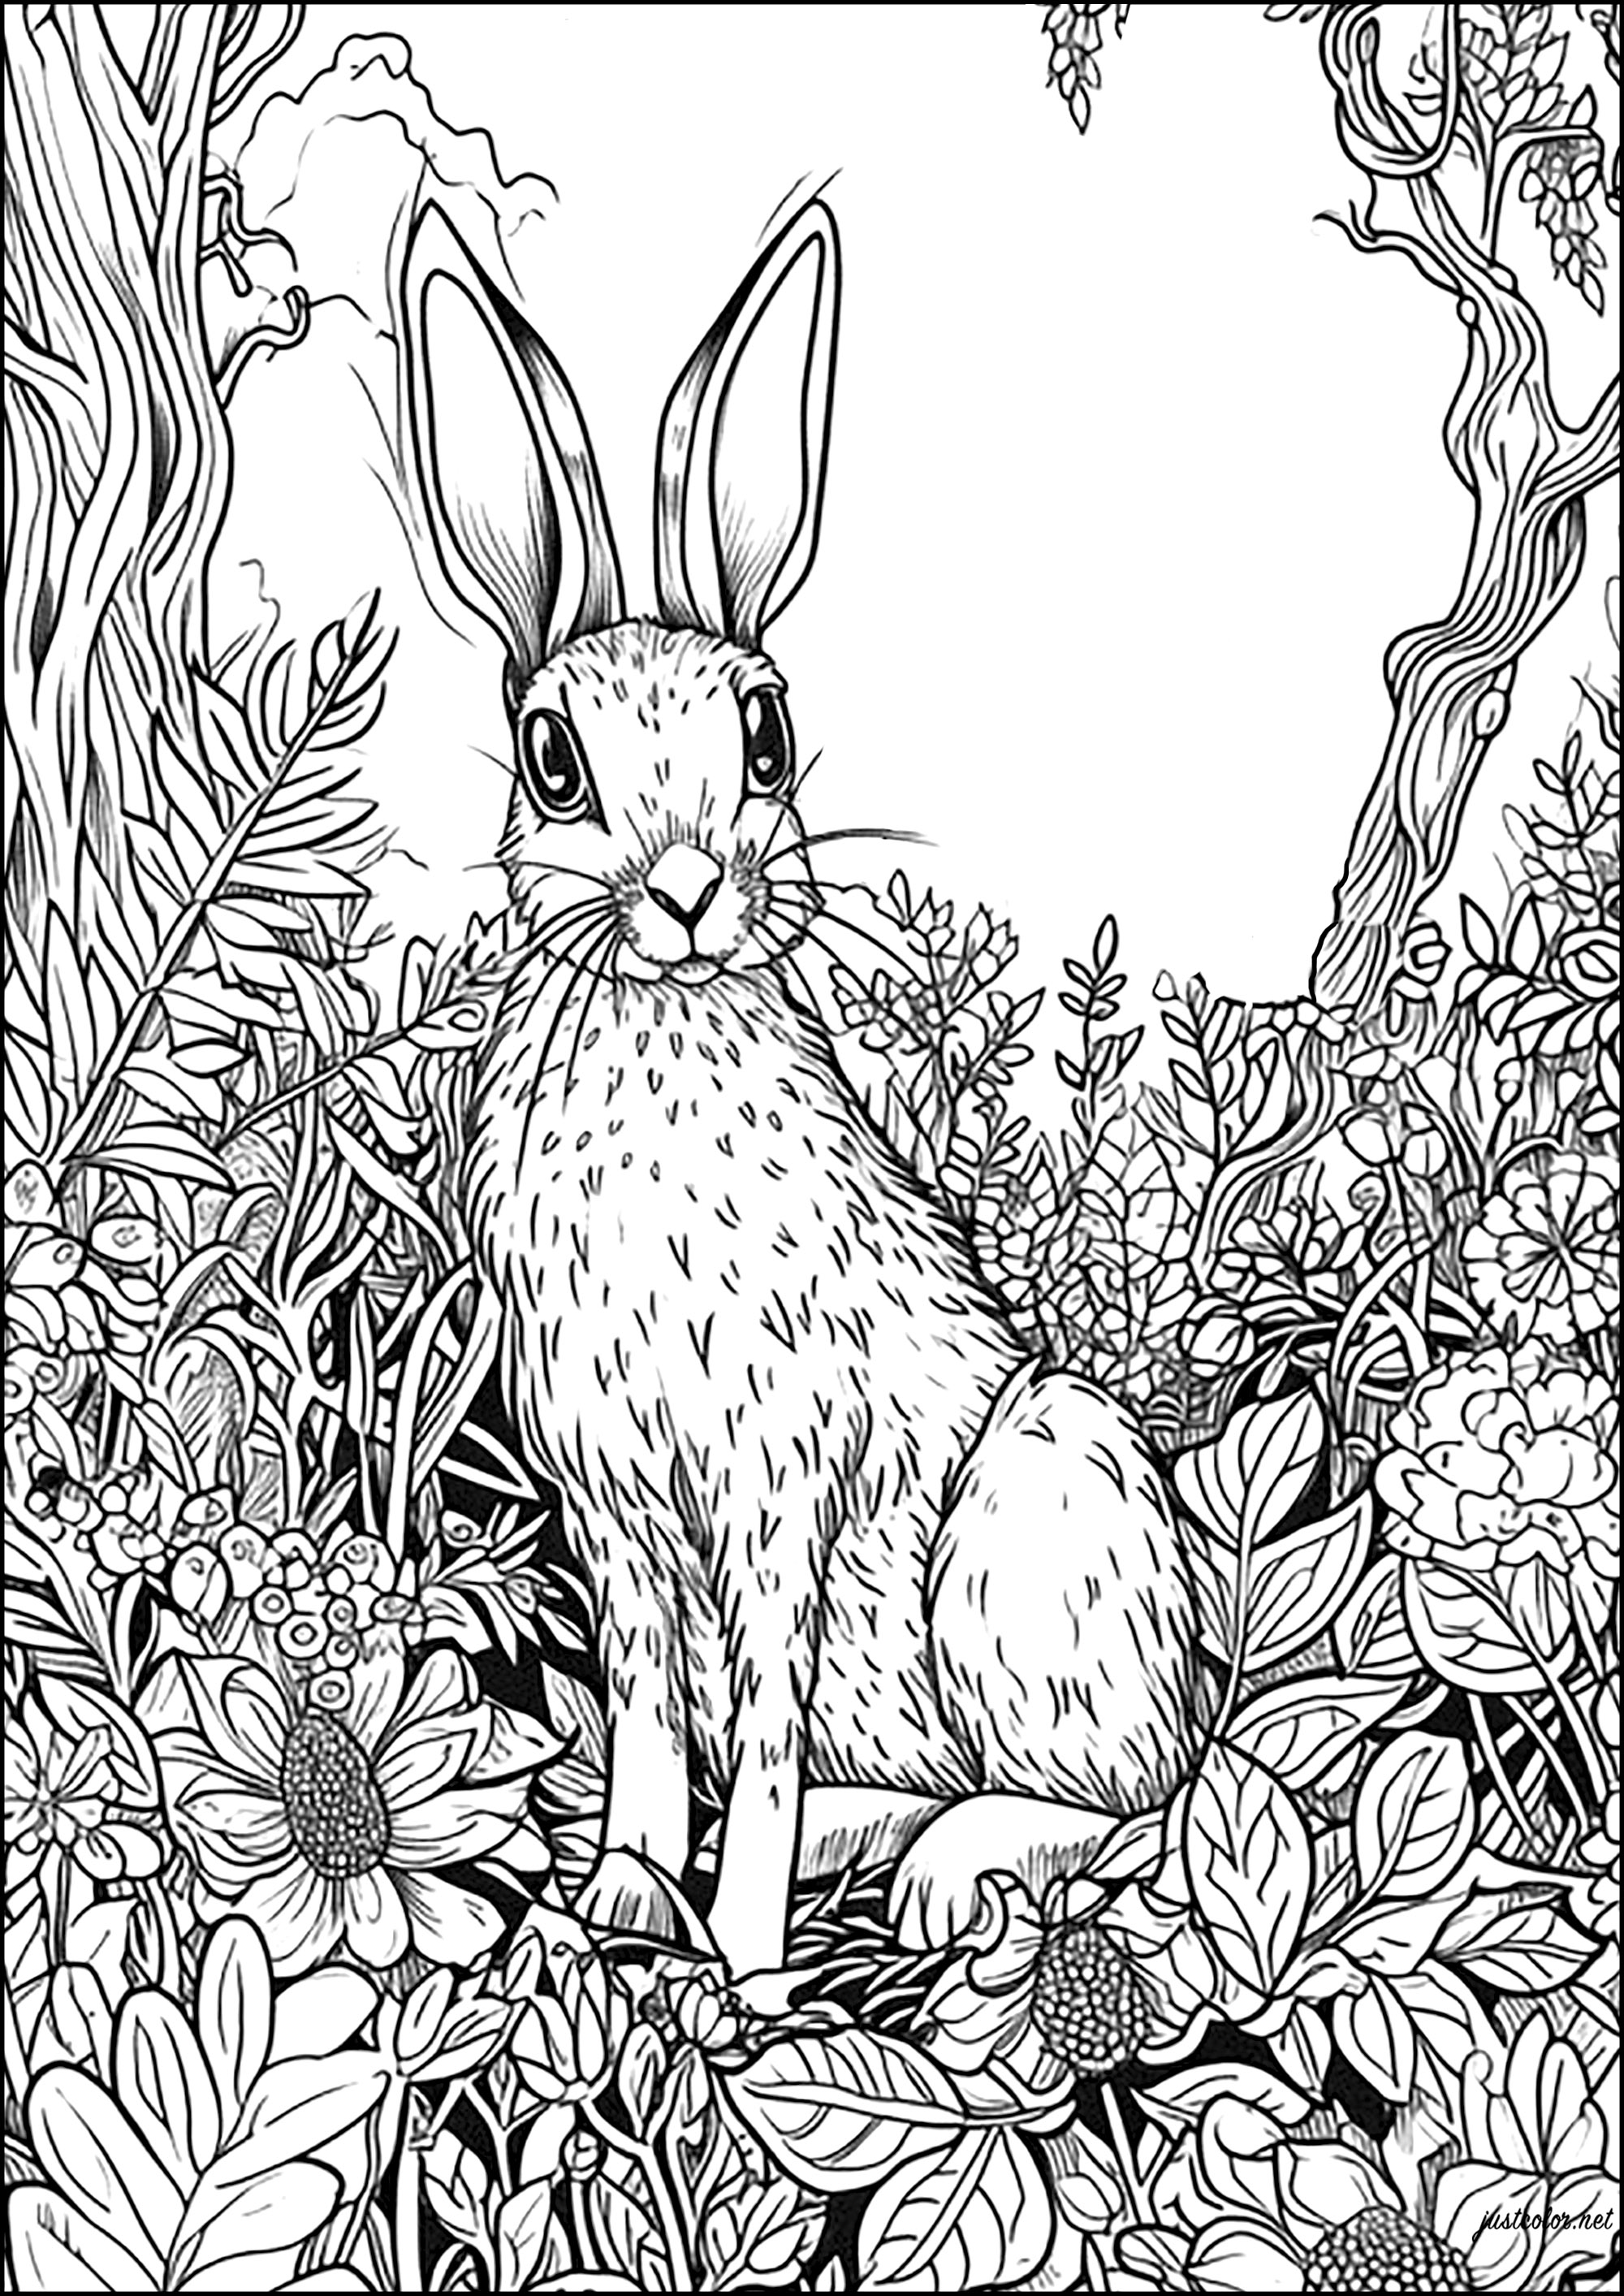 Un grosso coniglio vigile tra fiori e foglie